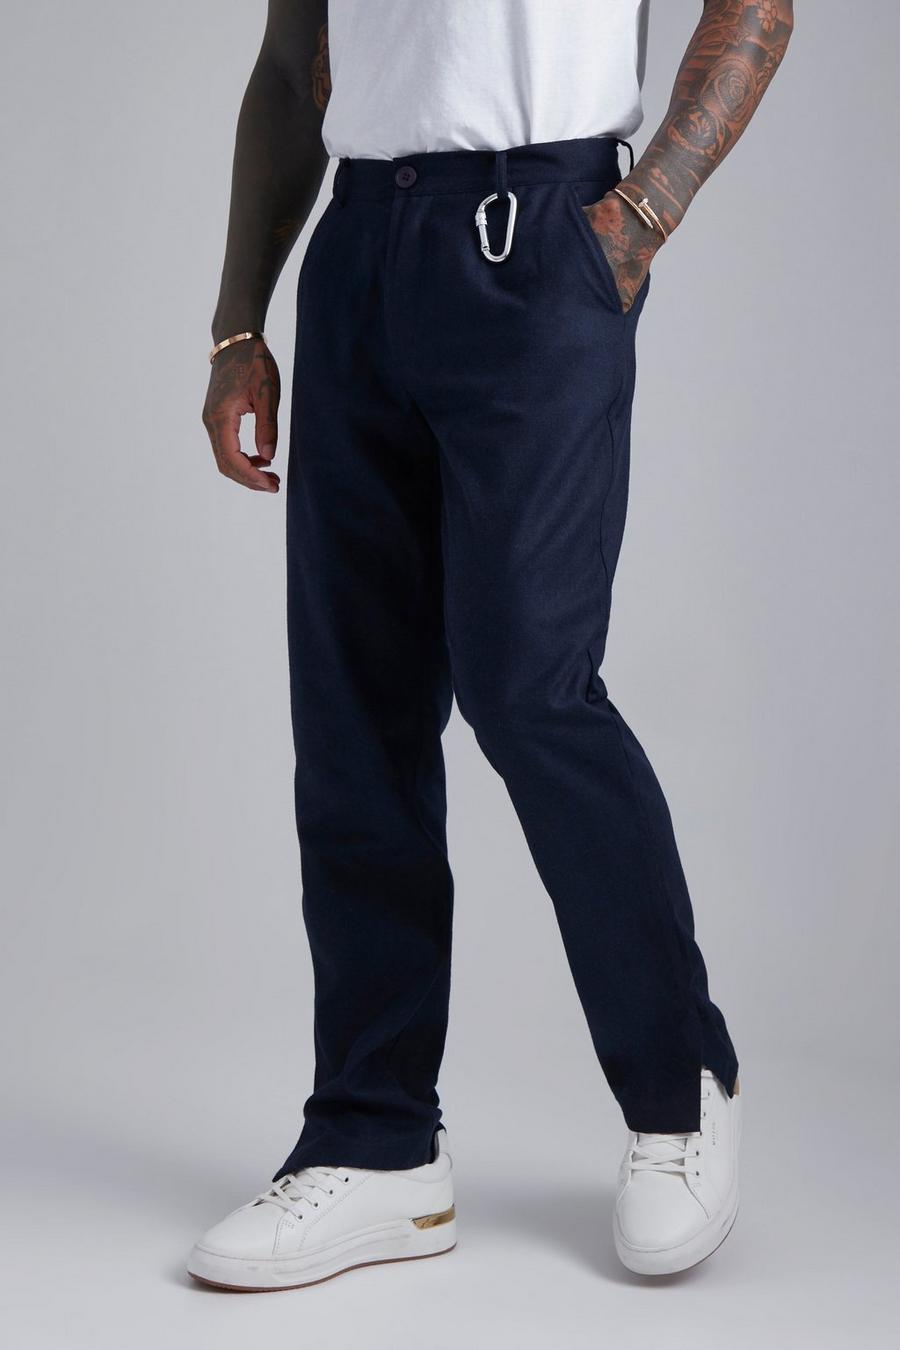 Pantaloni dritti effetto lana con spacco sul fondo e vita fissa, Navy azul marino